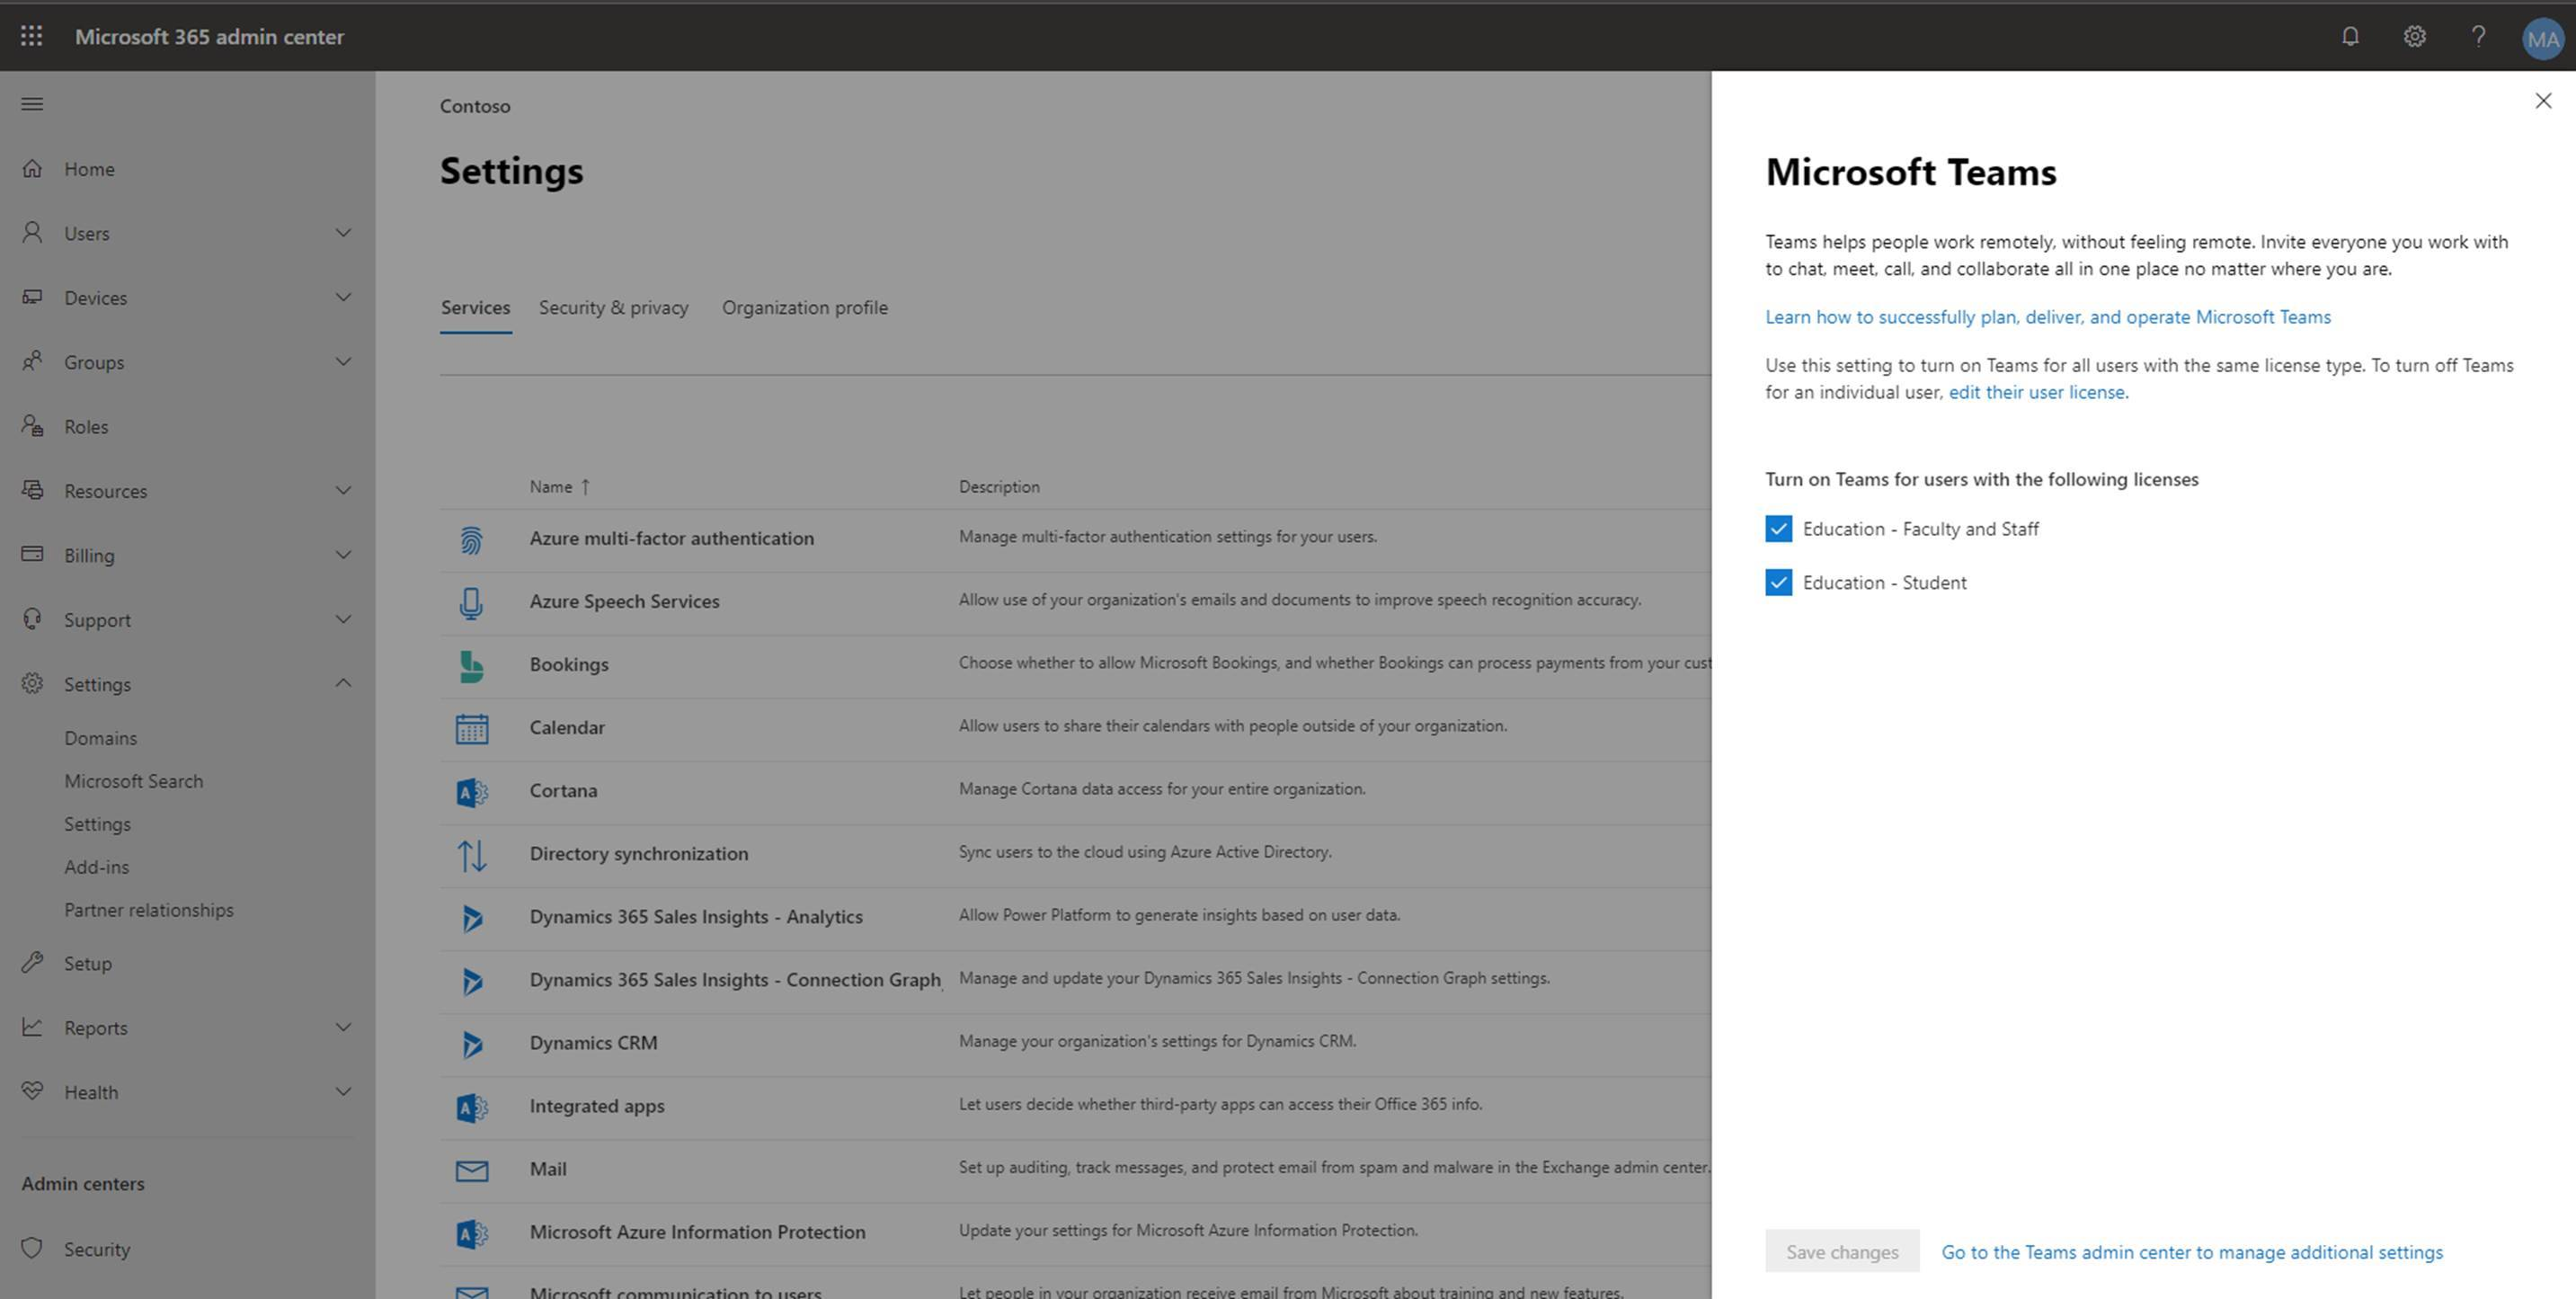 Seleccione la licencia de Microsoft Teams que desea configurar.